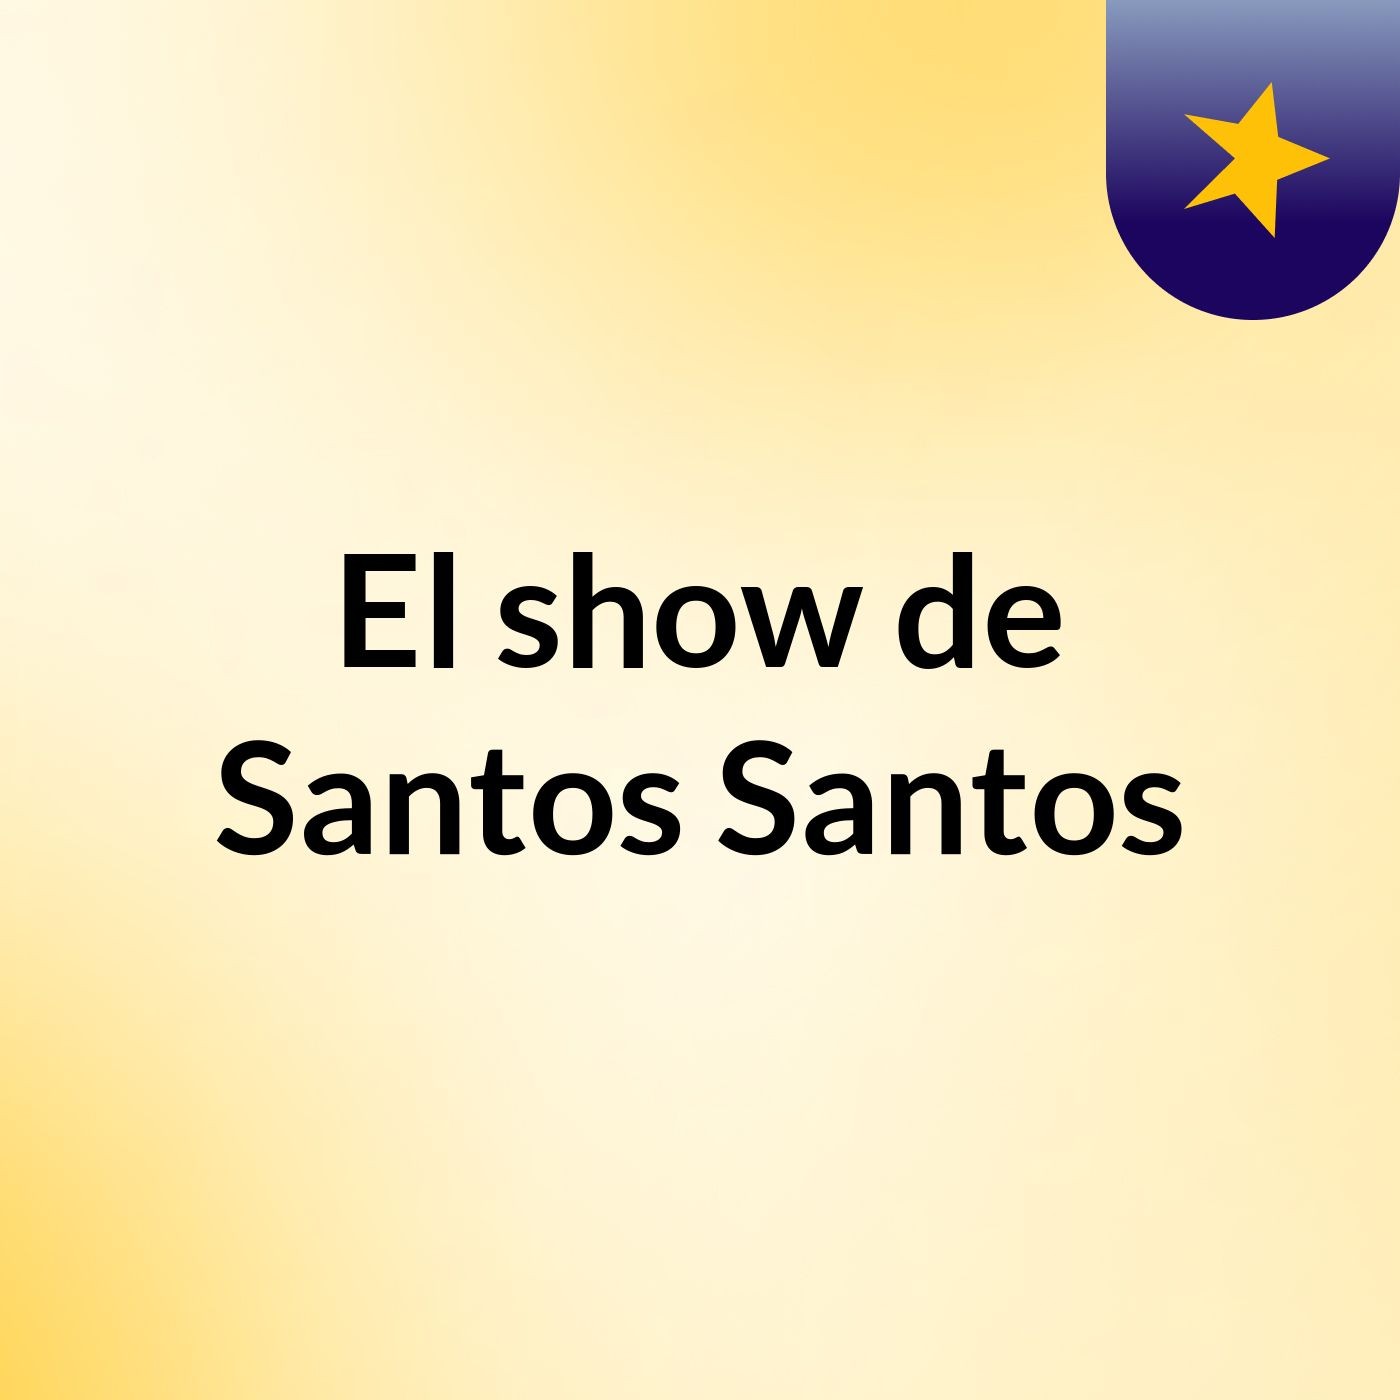 El show de Santos Santos